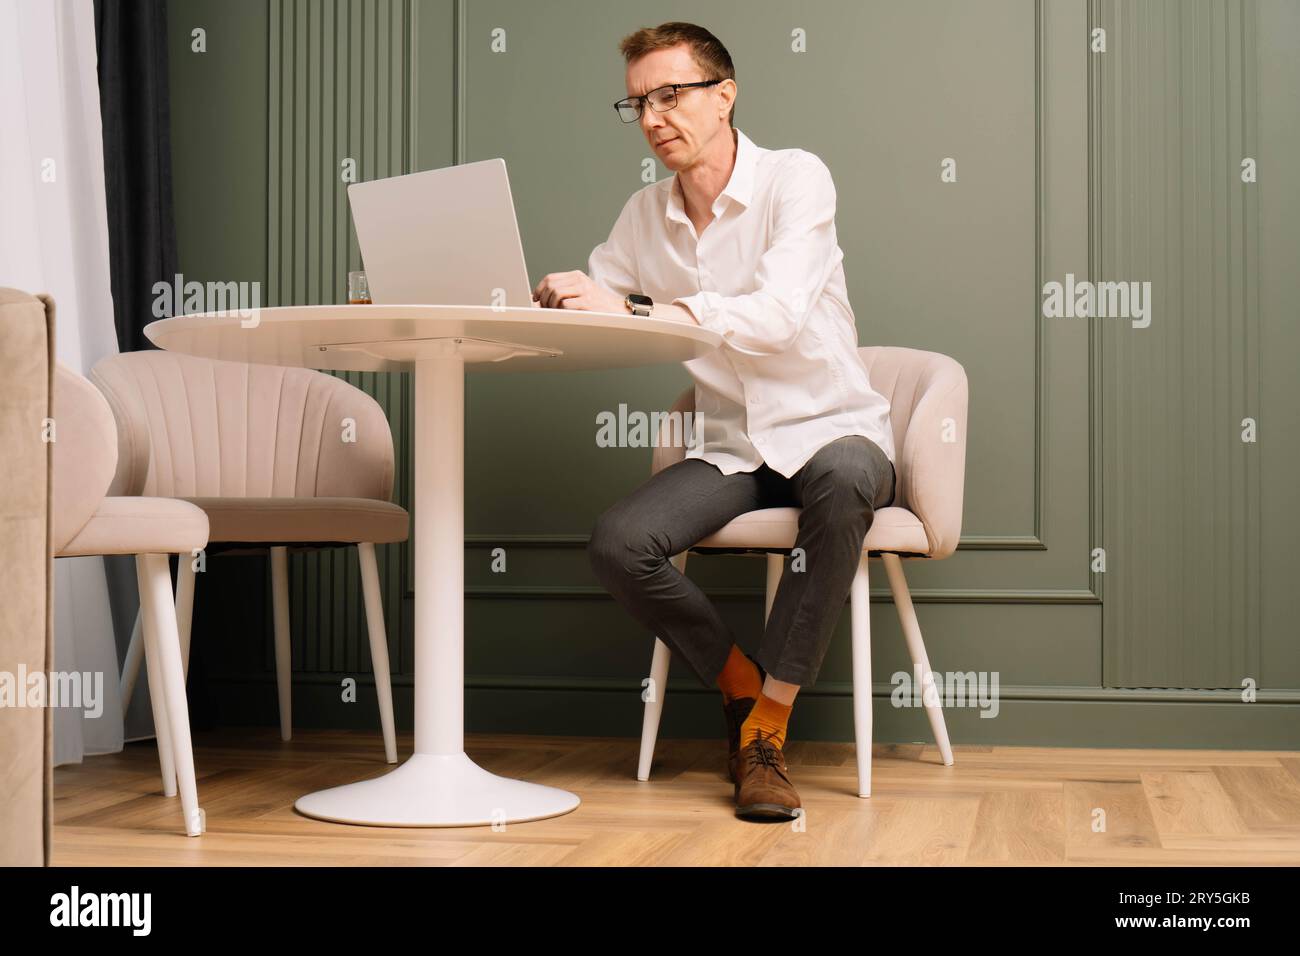 Pensativo hombre de mediana edad en gafas y camisa blanca sentado en la mesa y trabajando en el ordenador portátil. Hombre de negocios industrioso en calcetines naranjas con entusiasmo Foto de stock